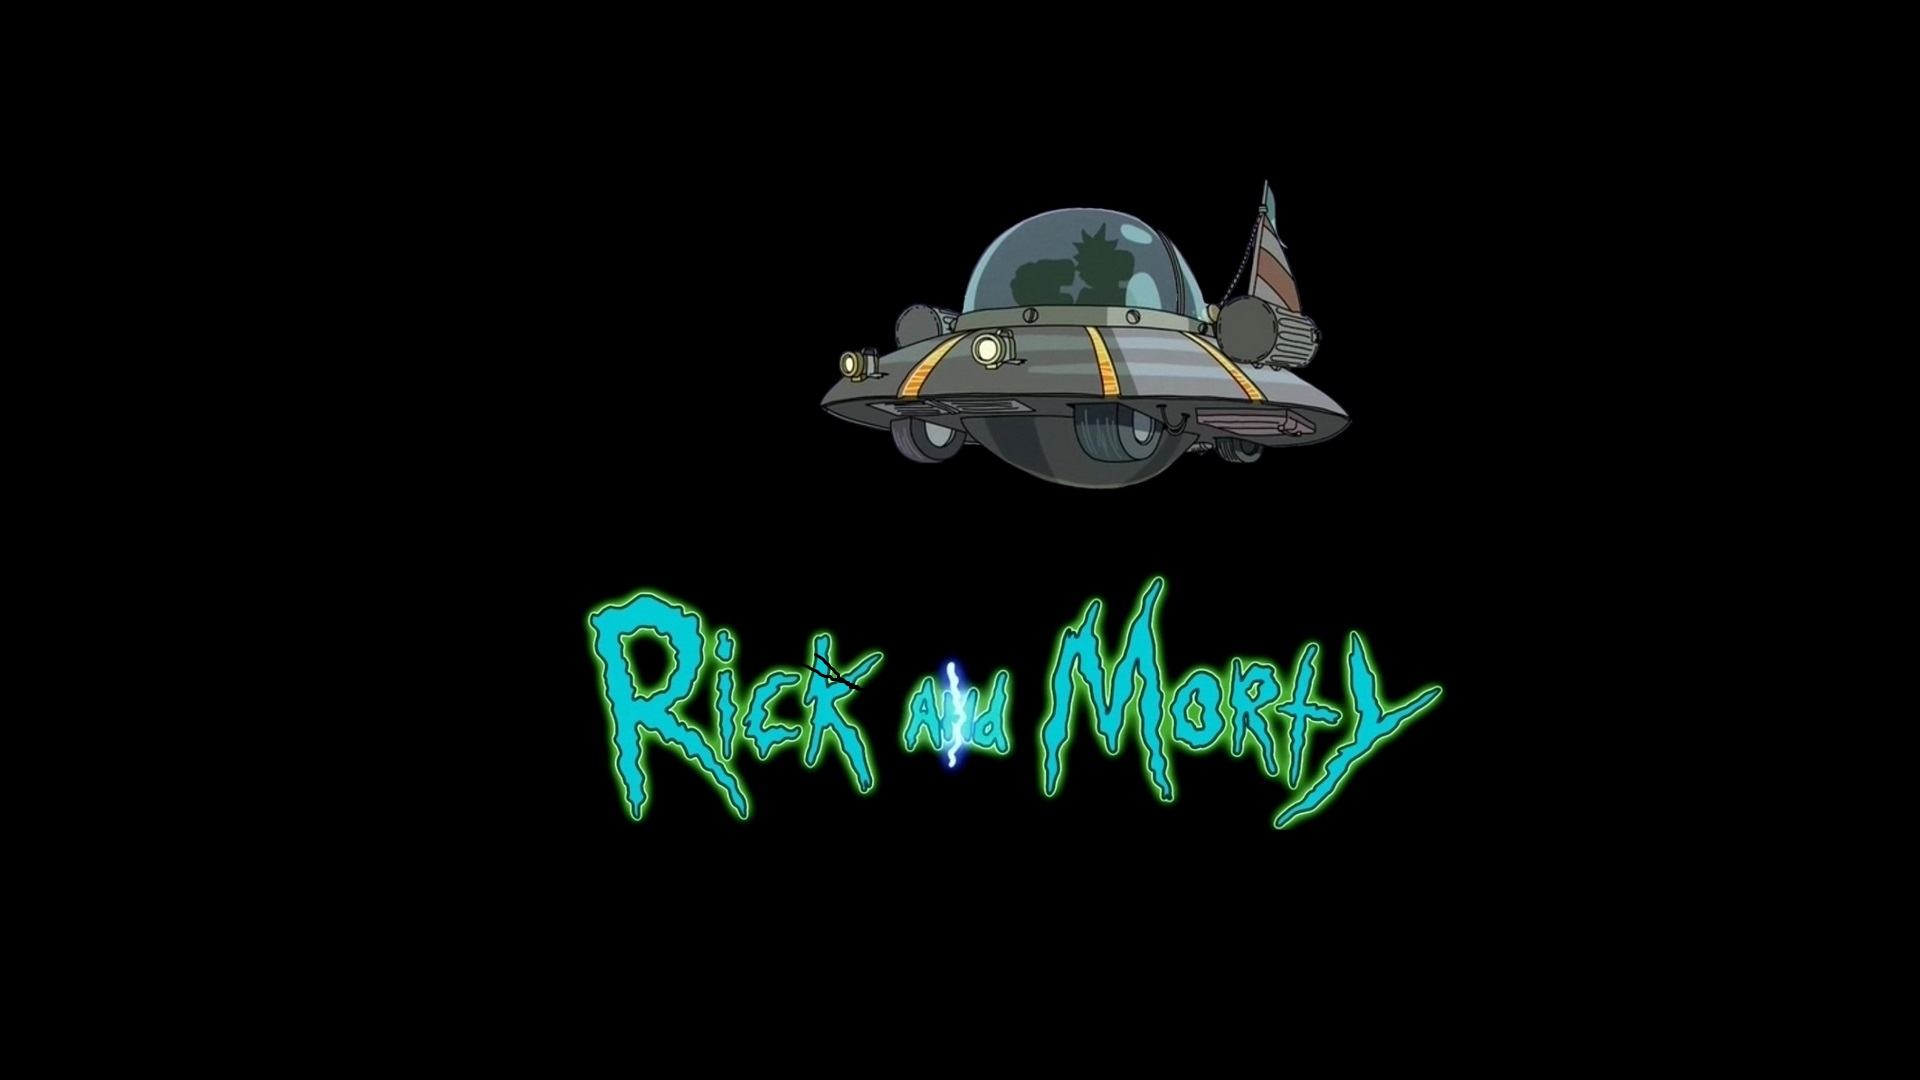 Descargar fondos de escritorio de Crucero Espacial (Rick Y Morty) HD